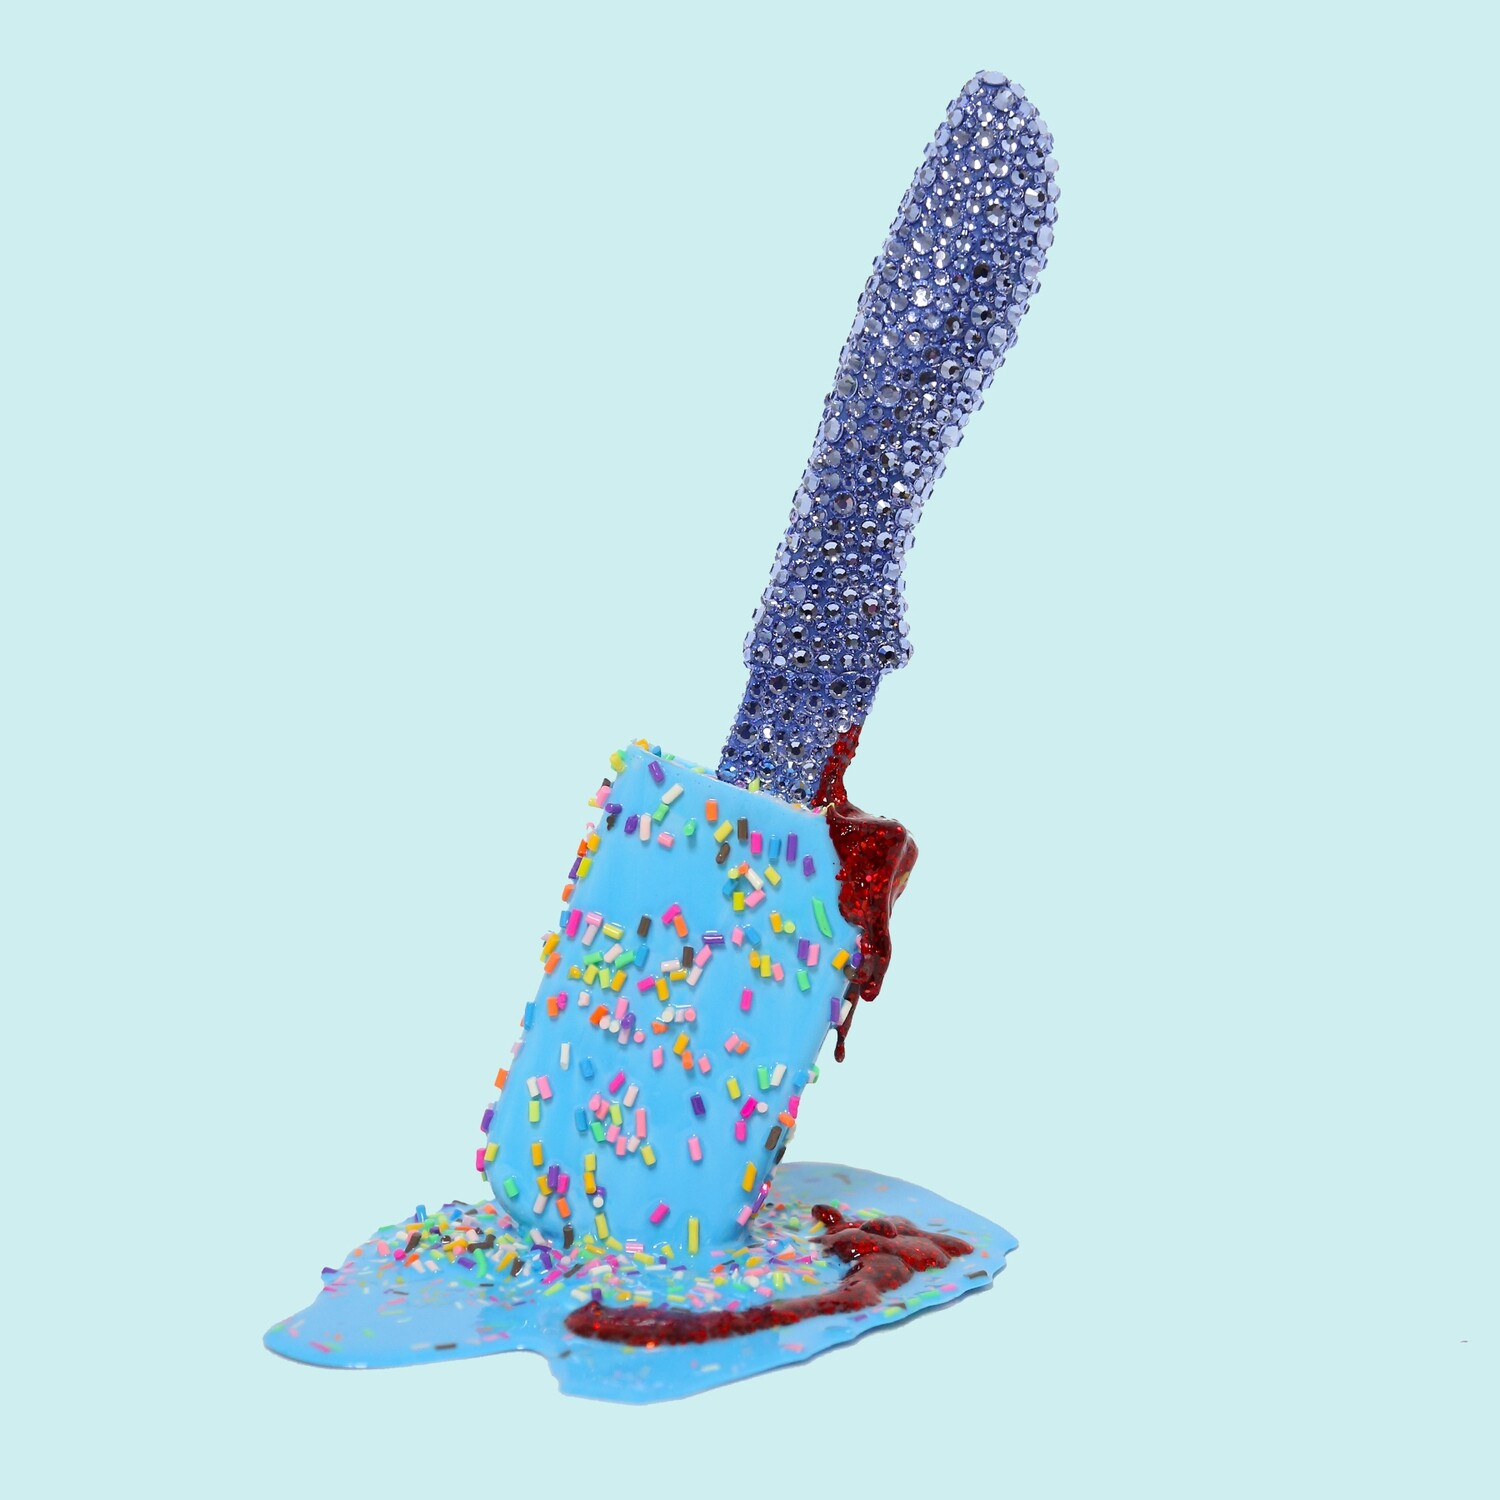 Melting Popsicle Art - Psycho Iced Sprinkle Pop - Original Melting Pops